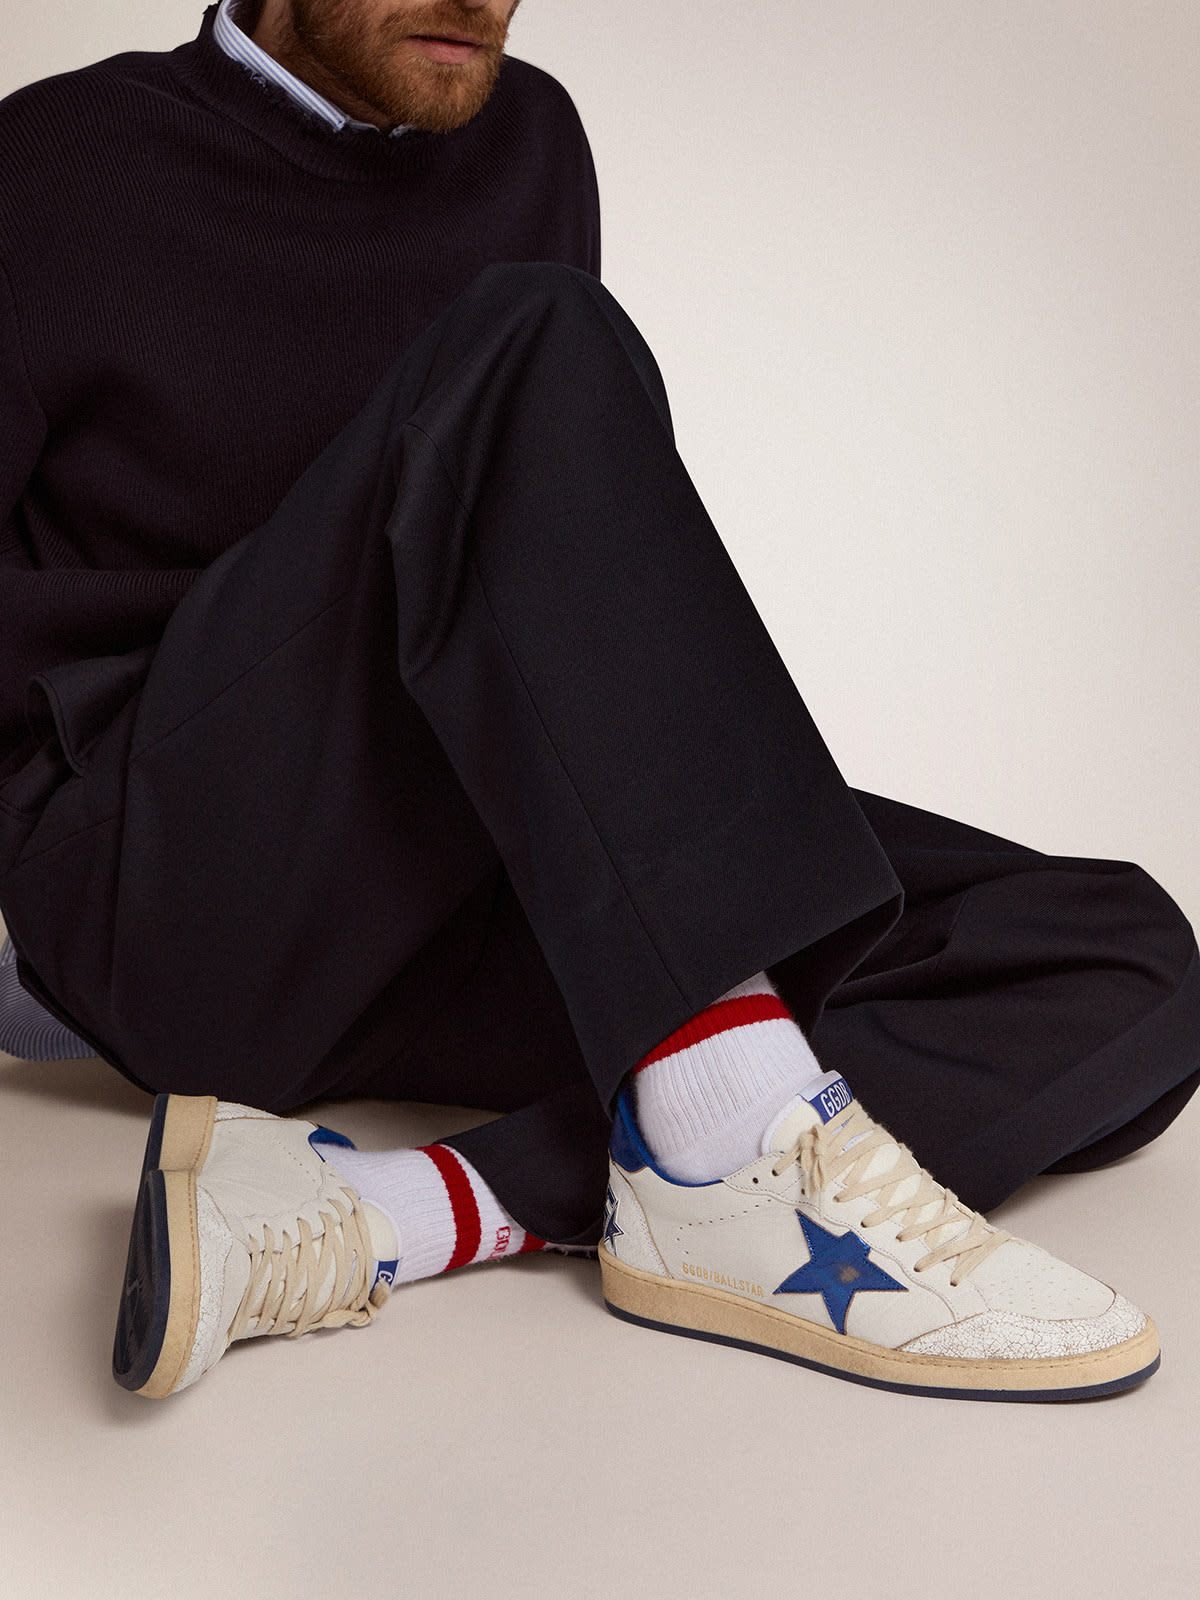 Golden Goose - Sneakers Ball Star en cuir nappa blanc avec étoile et contrefort en cuir lamé bleuet in 